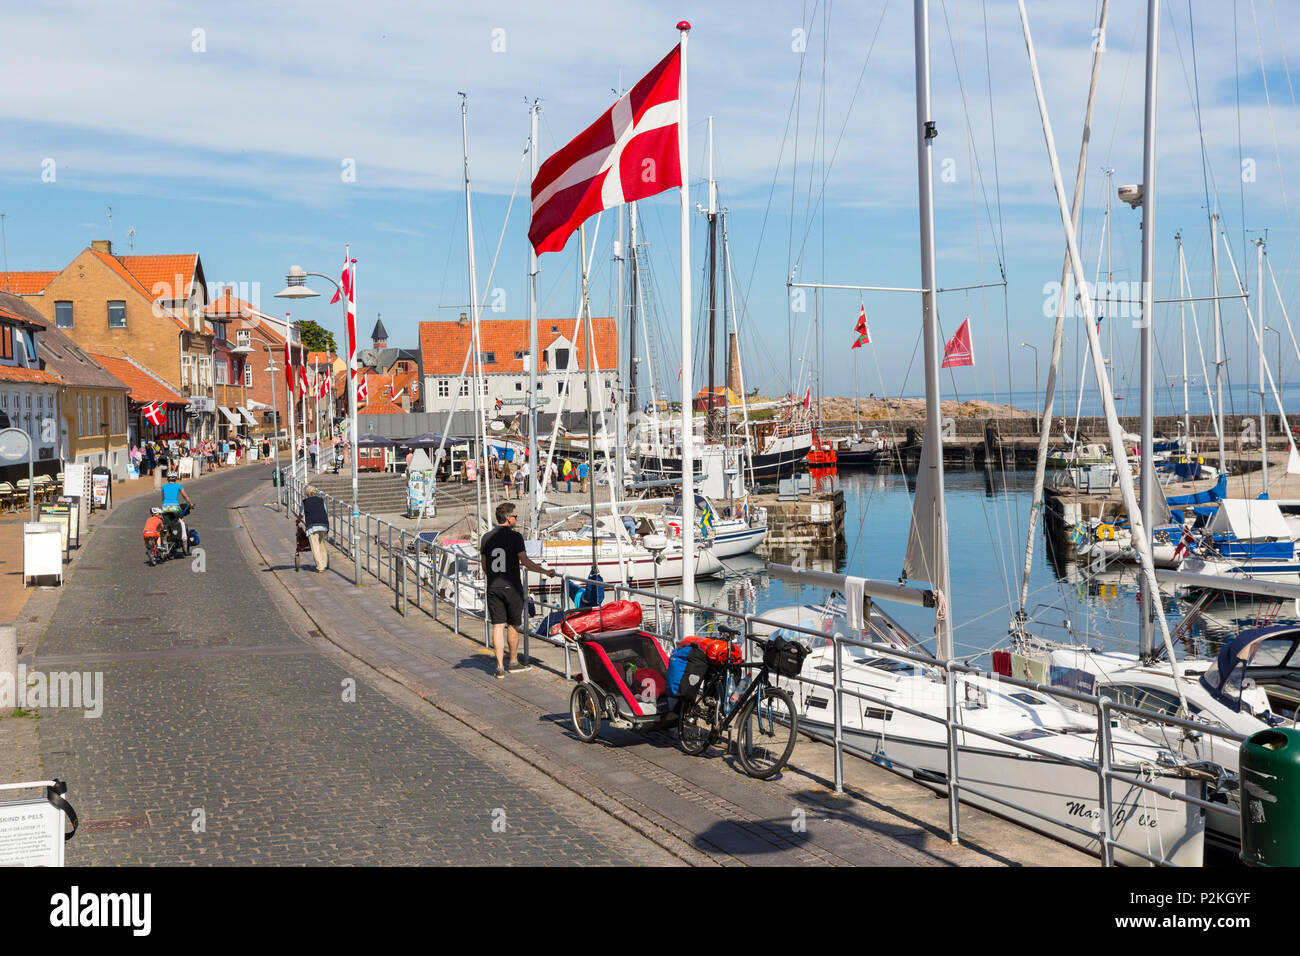 Port de Allinge, drapeau danois le long de la route principale, village de pêcheurs, la mer Baltique, Bornholm, Allinge, Danemark, Europe Banque D'Images